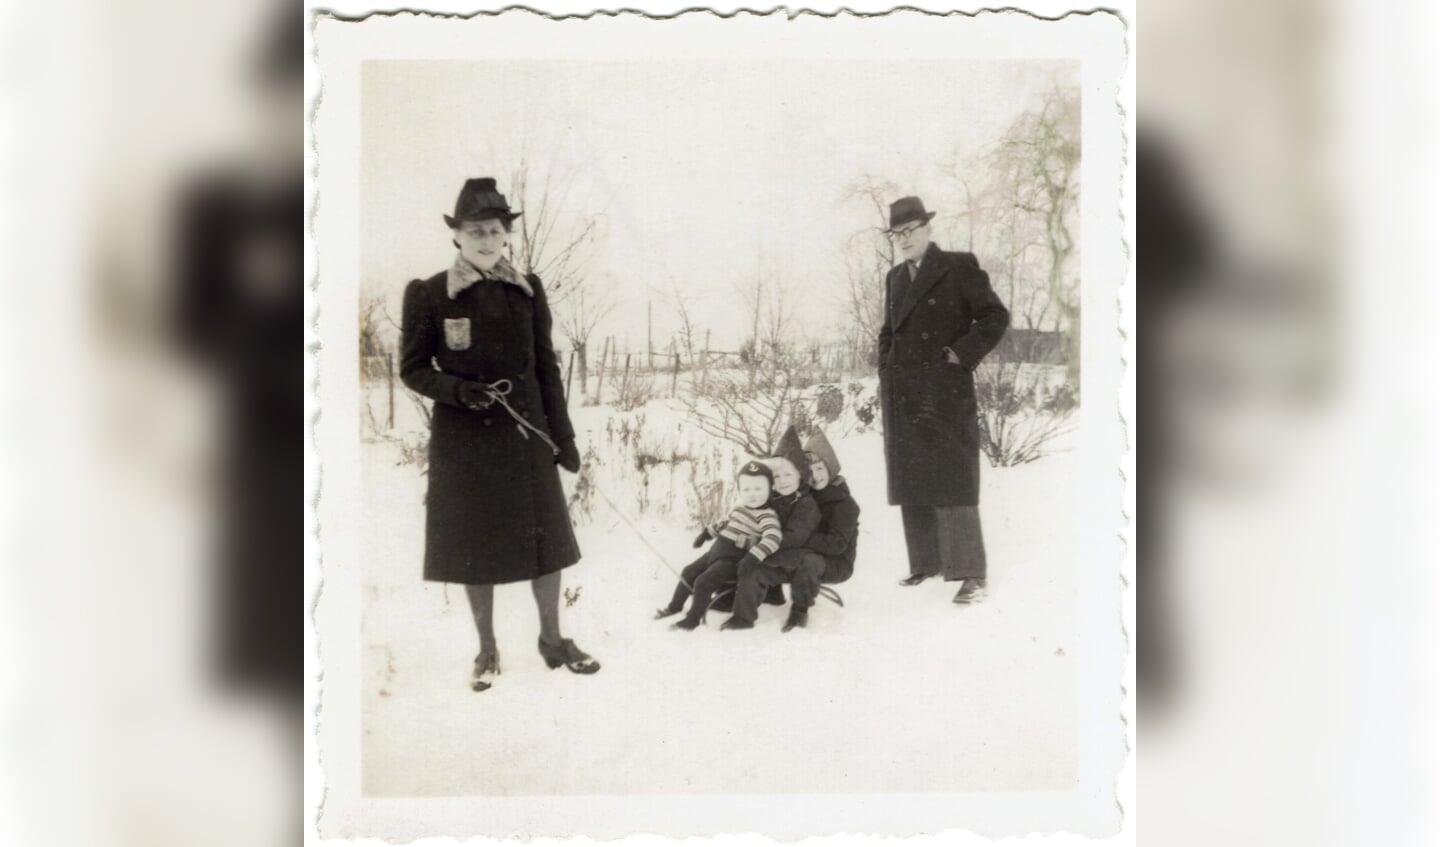 Minke en Rinze met de drie oudste kinderen Stef Henca en Sita - januari 1943.  Privéfoto 